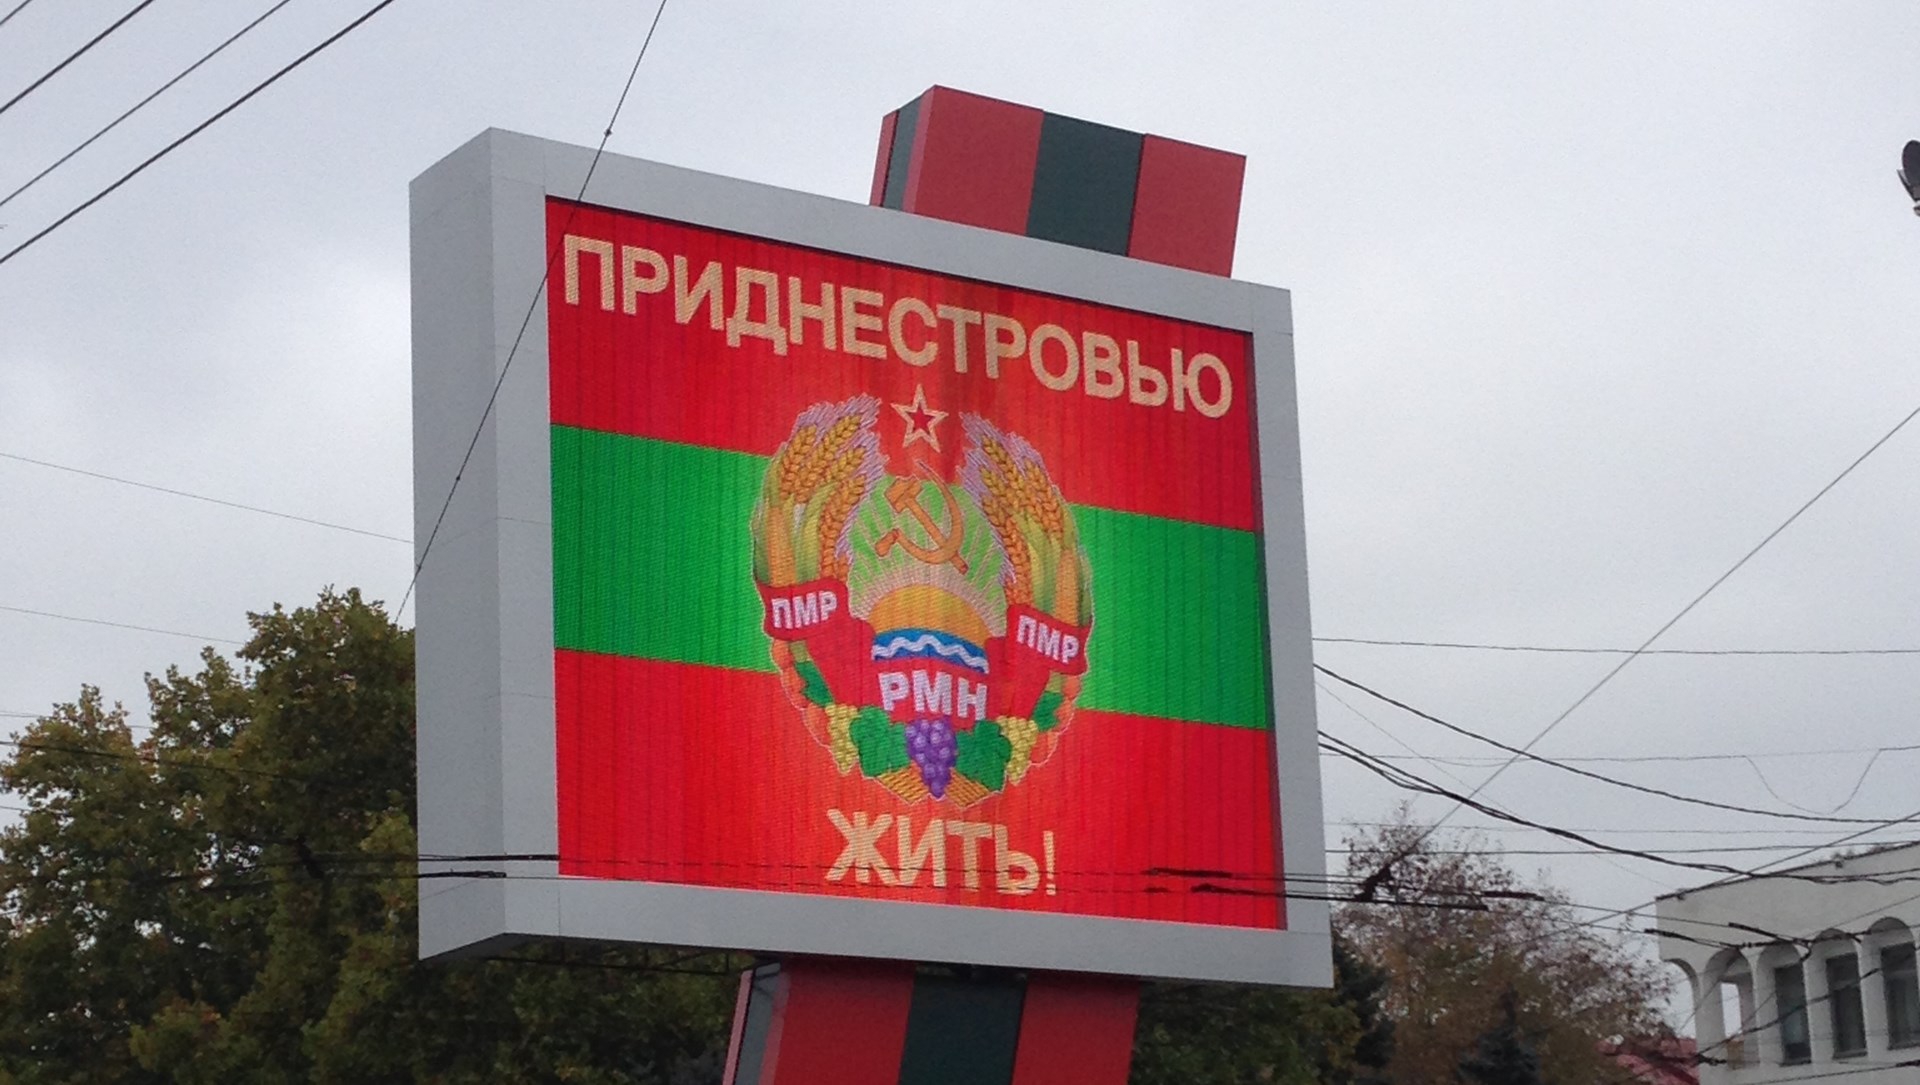 Кишинев готов на "особый статус" Приднестровья  - фото 1